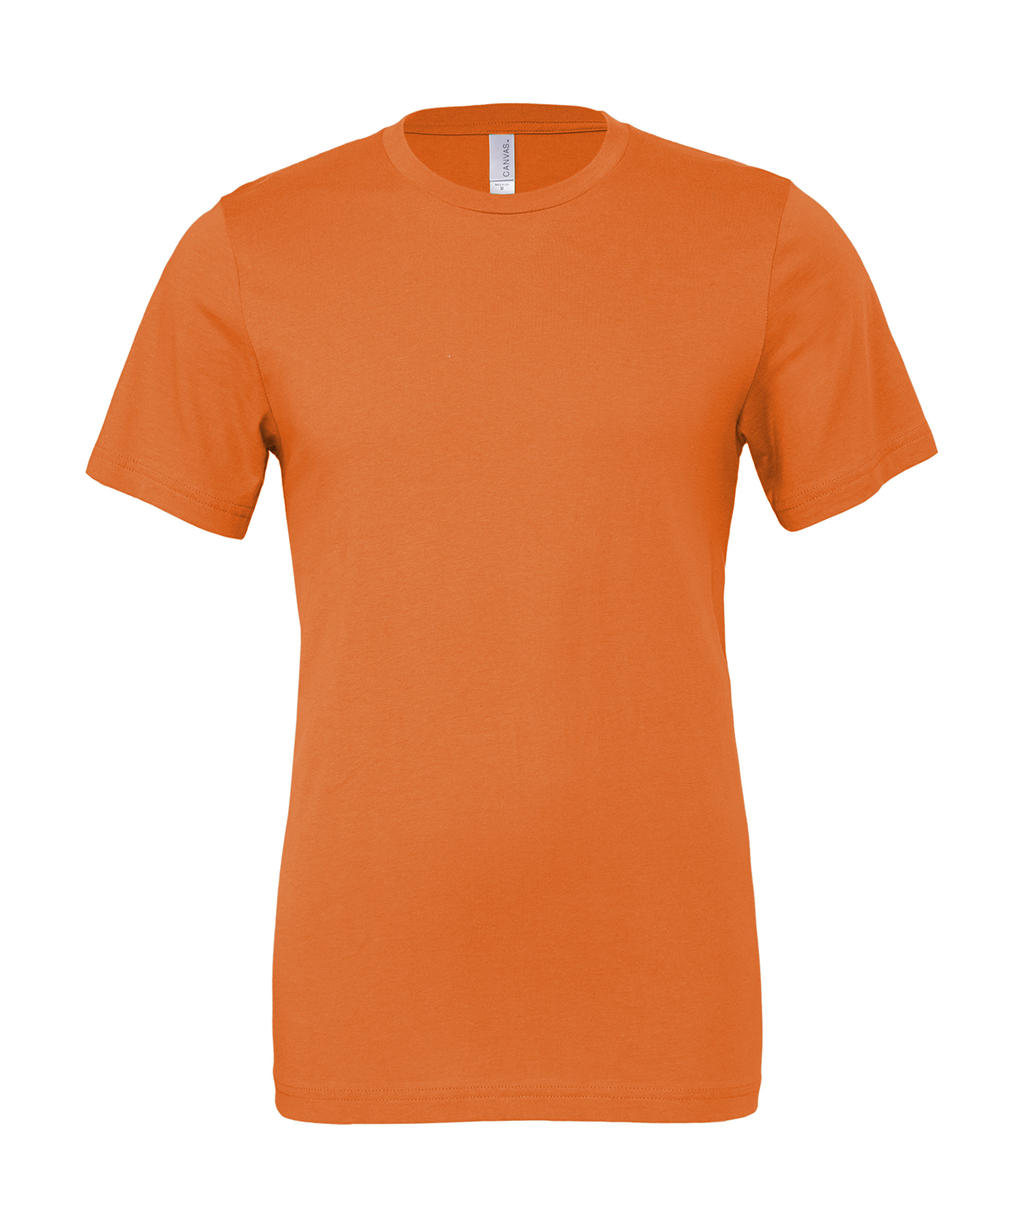 Tričko Unisex Jersey - orange